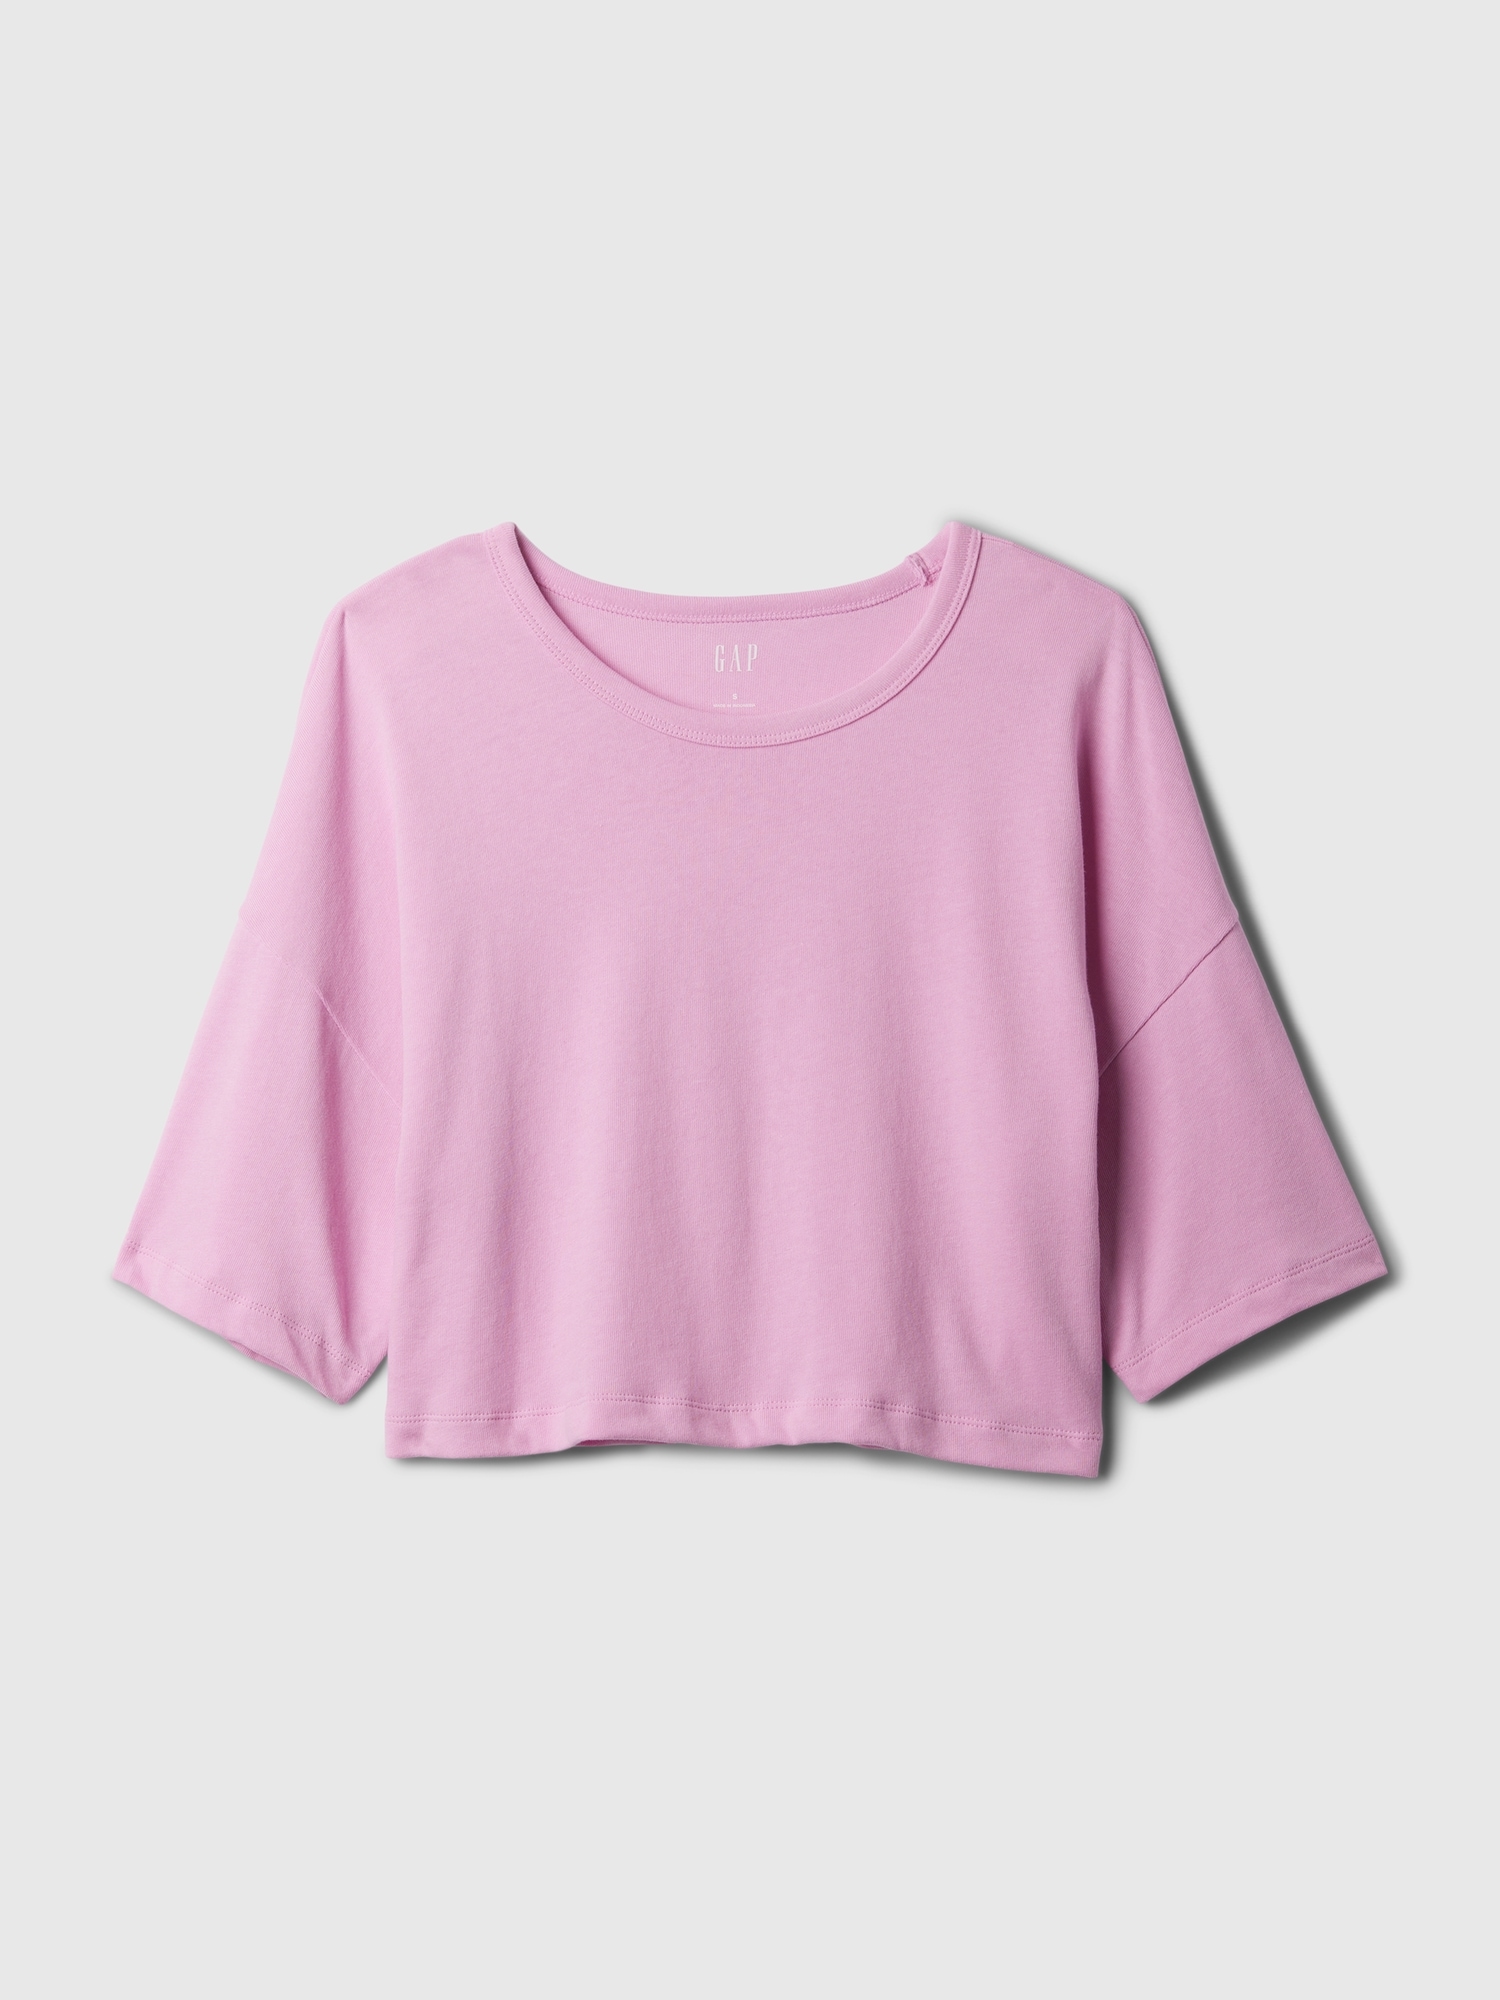 갭 Ultra-Cropped Oversized T-Shirt